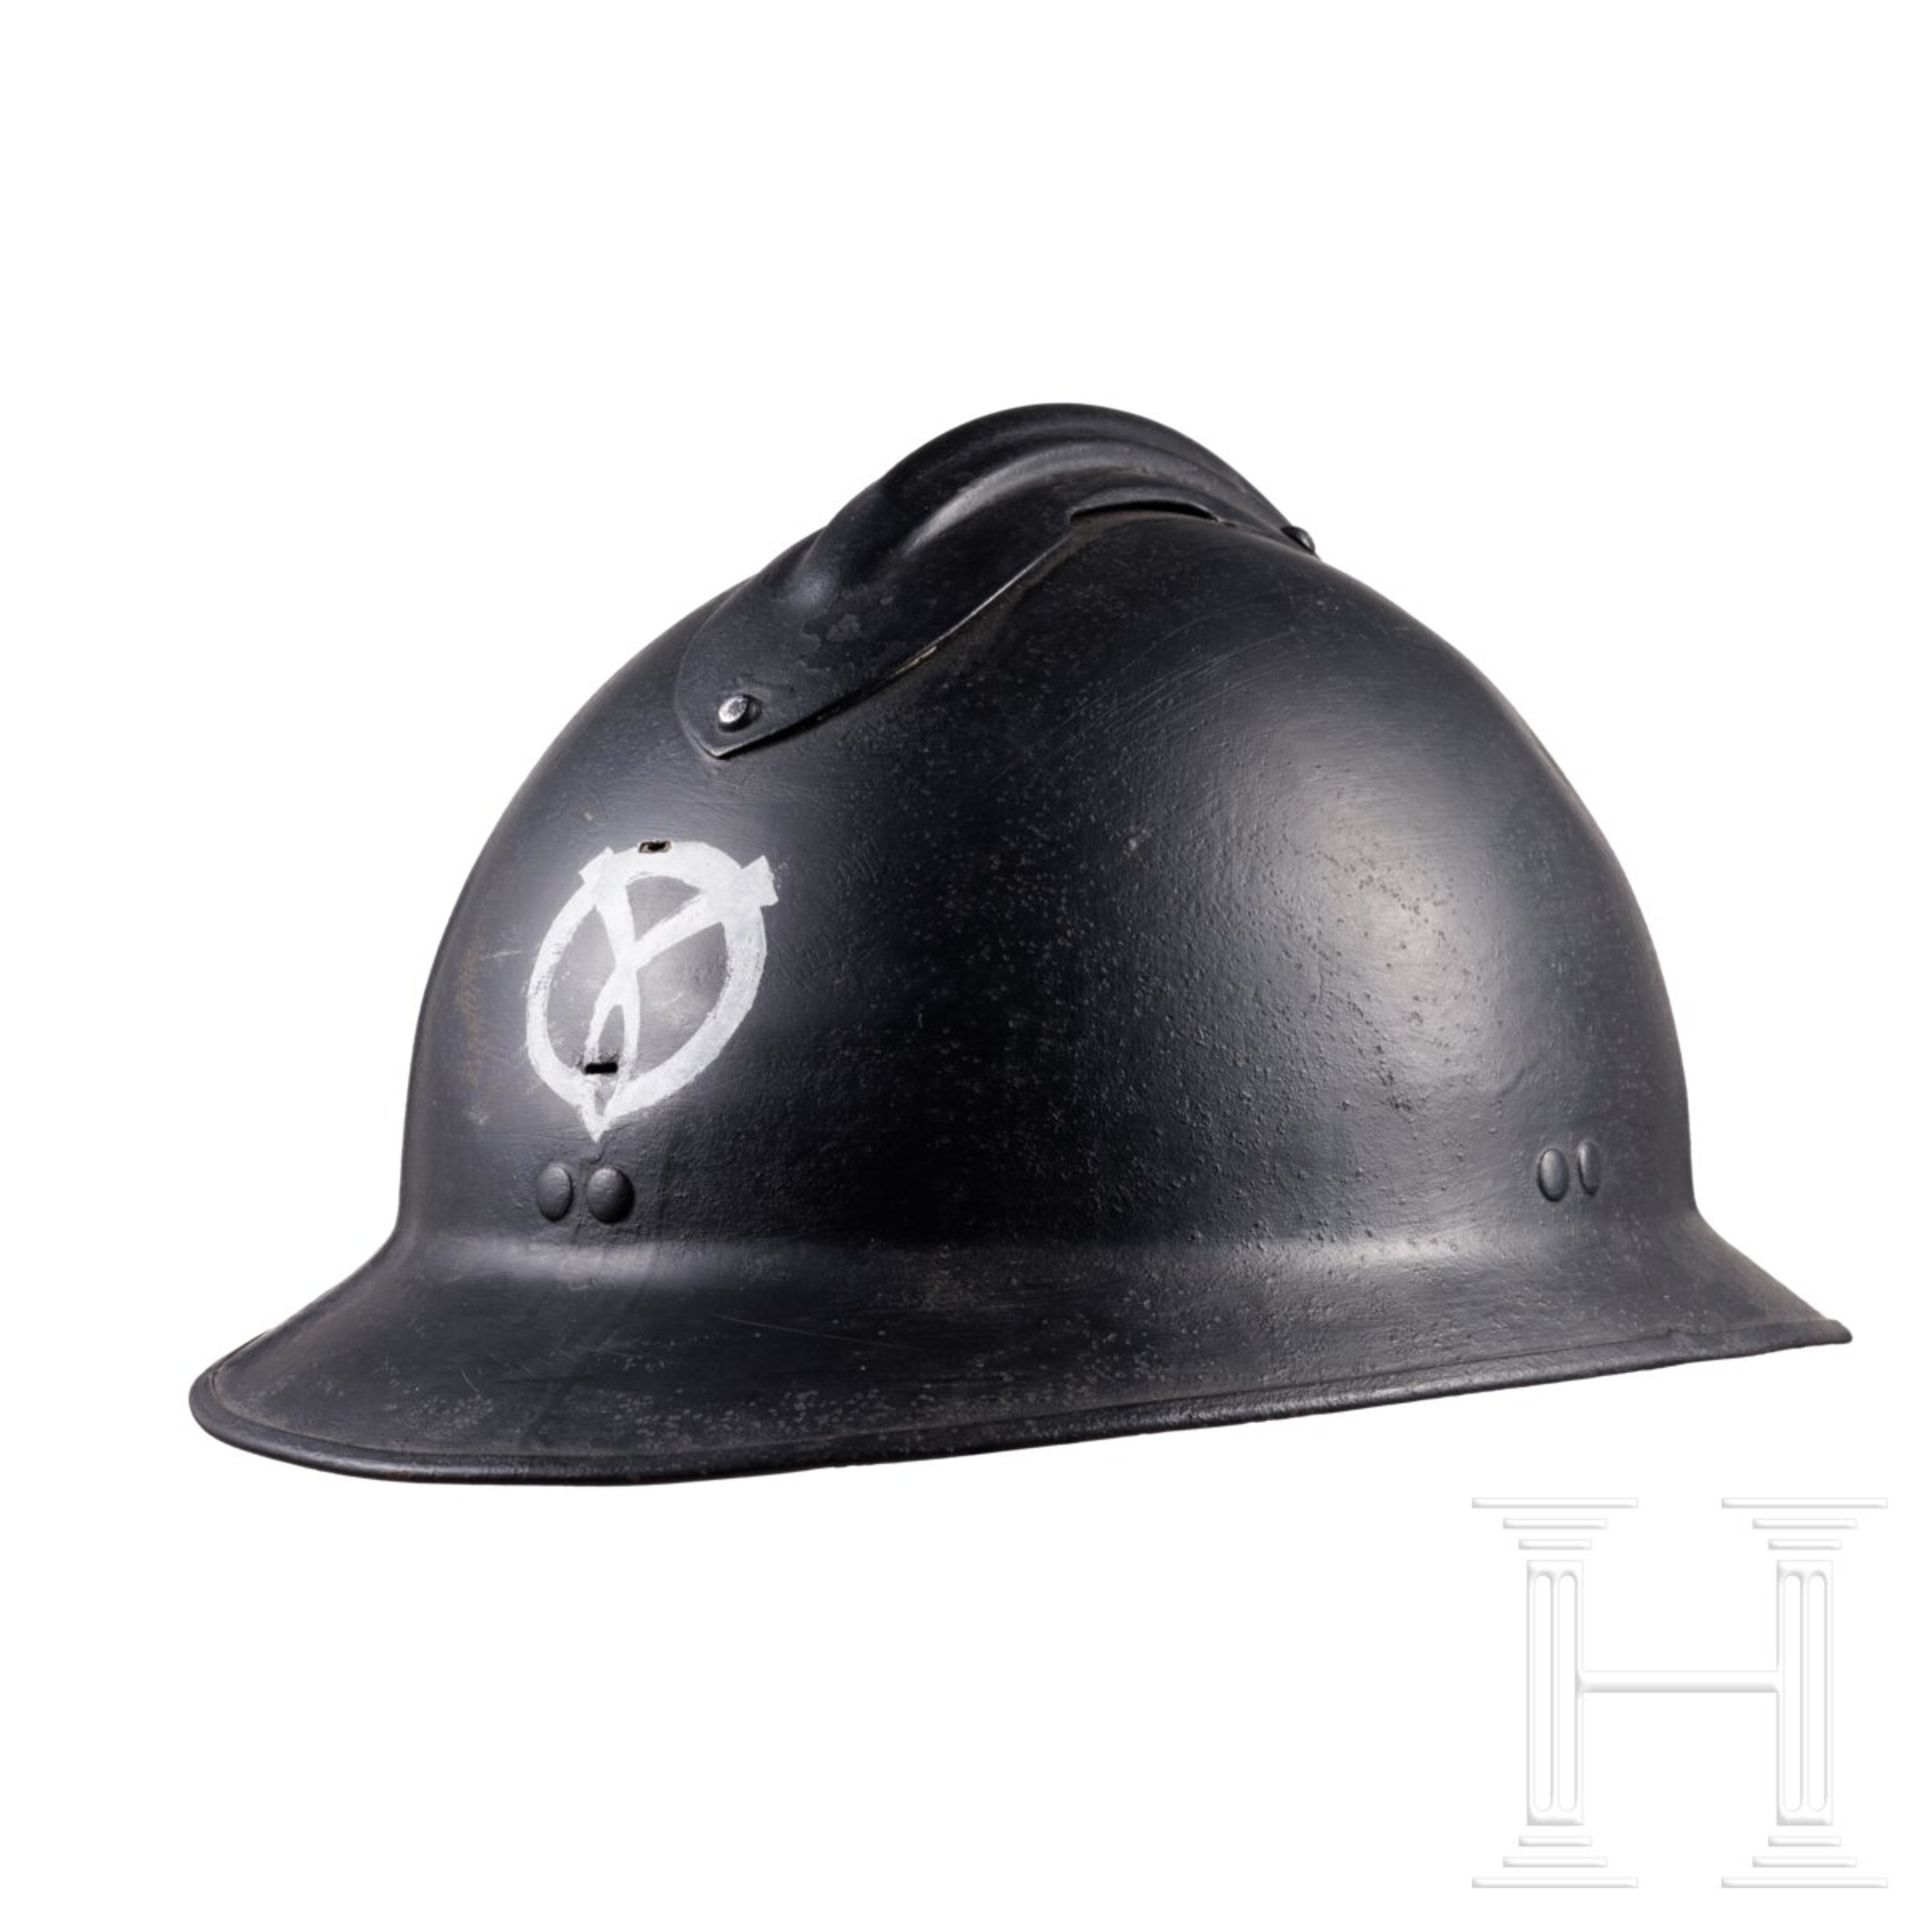 Stahlhelm M 26 Adrian mit Vichy-Emblem, 1940 - 1944